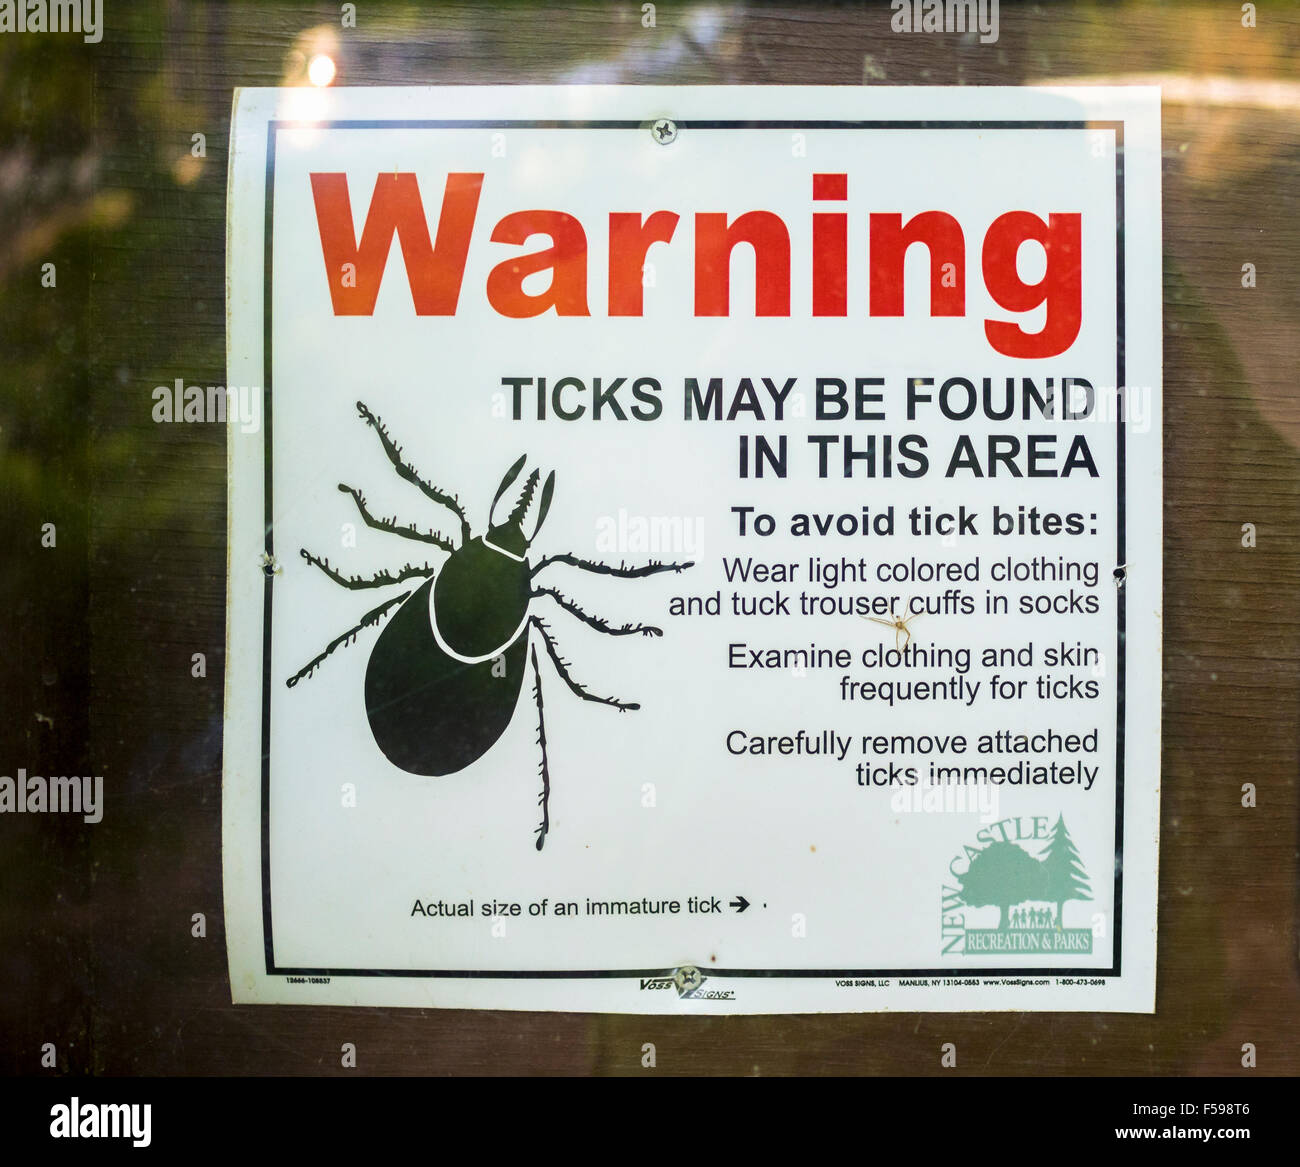 Deer tick Plakat Schild Warnhinweis auf einer Wanderung veröffentlicht trail Weg Westchester County New York Lyme-Borreliose Problem der öffentlichen Gesundheit Stockfoto